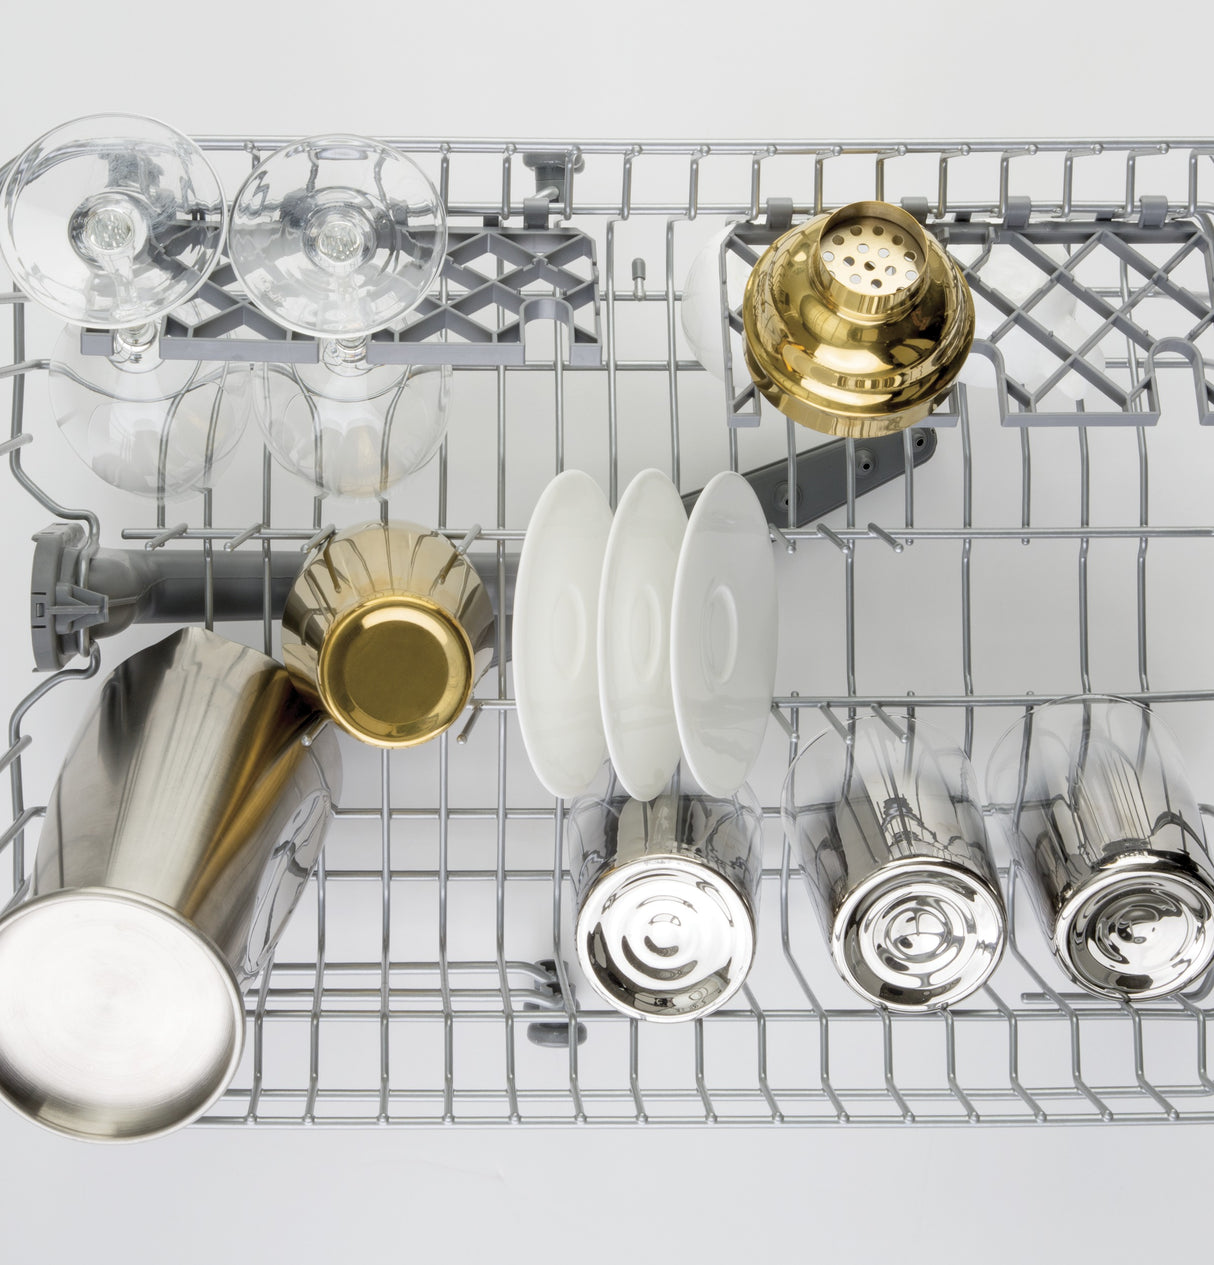 18" Dishwasher - (UDT165SIVII)